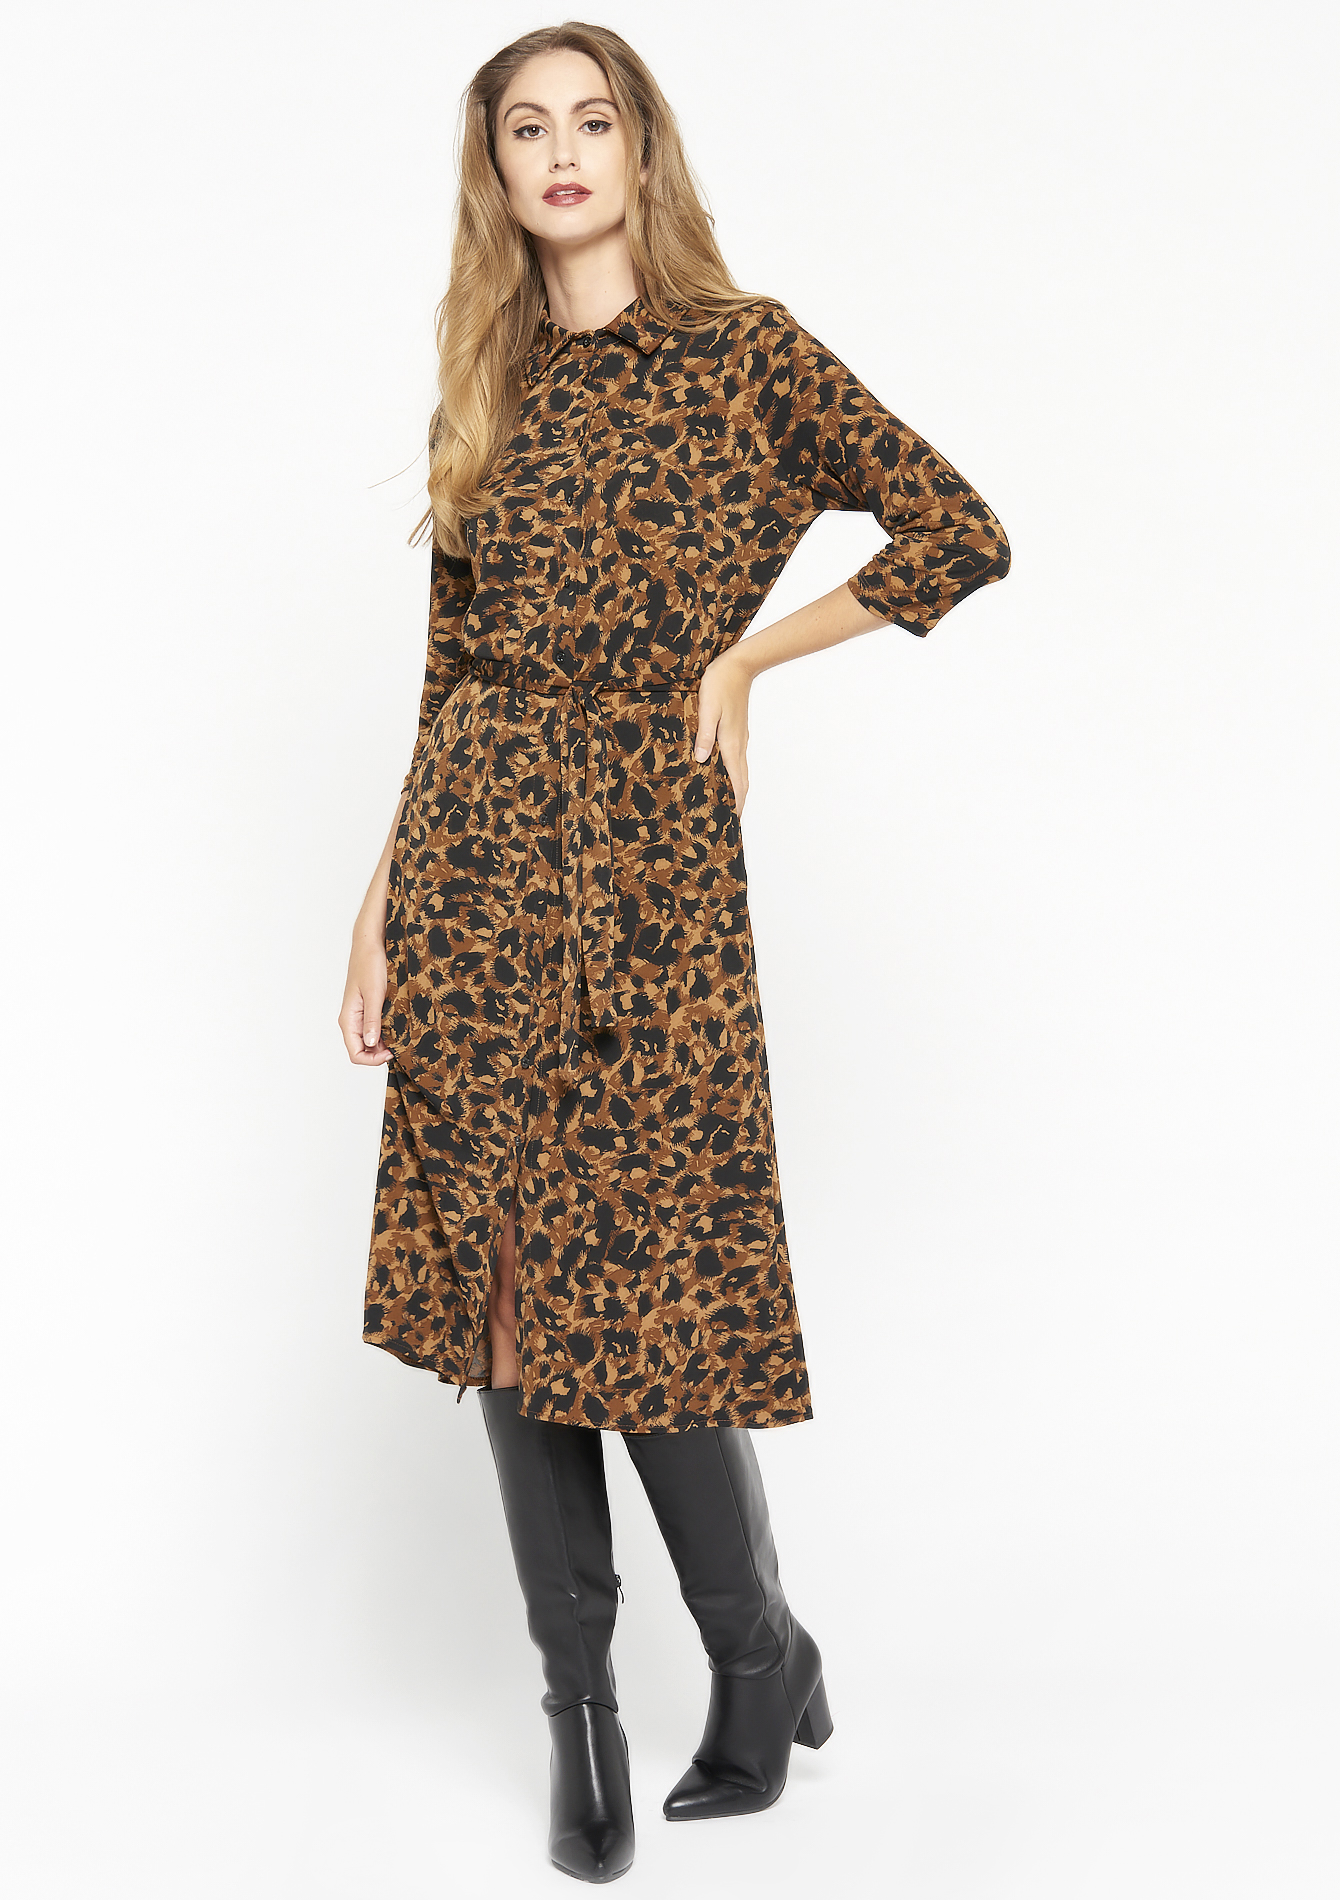 Robe chemise a imprimé léopard - CARAMEL COFFEE - 08102689_952